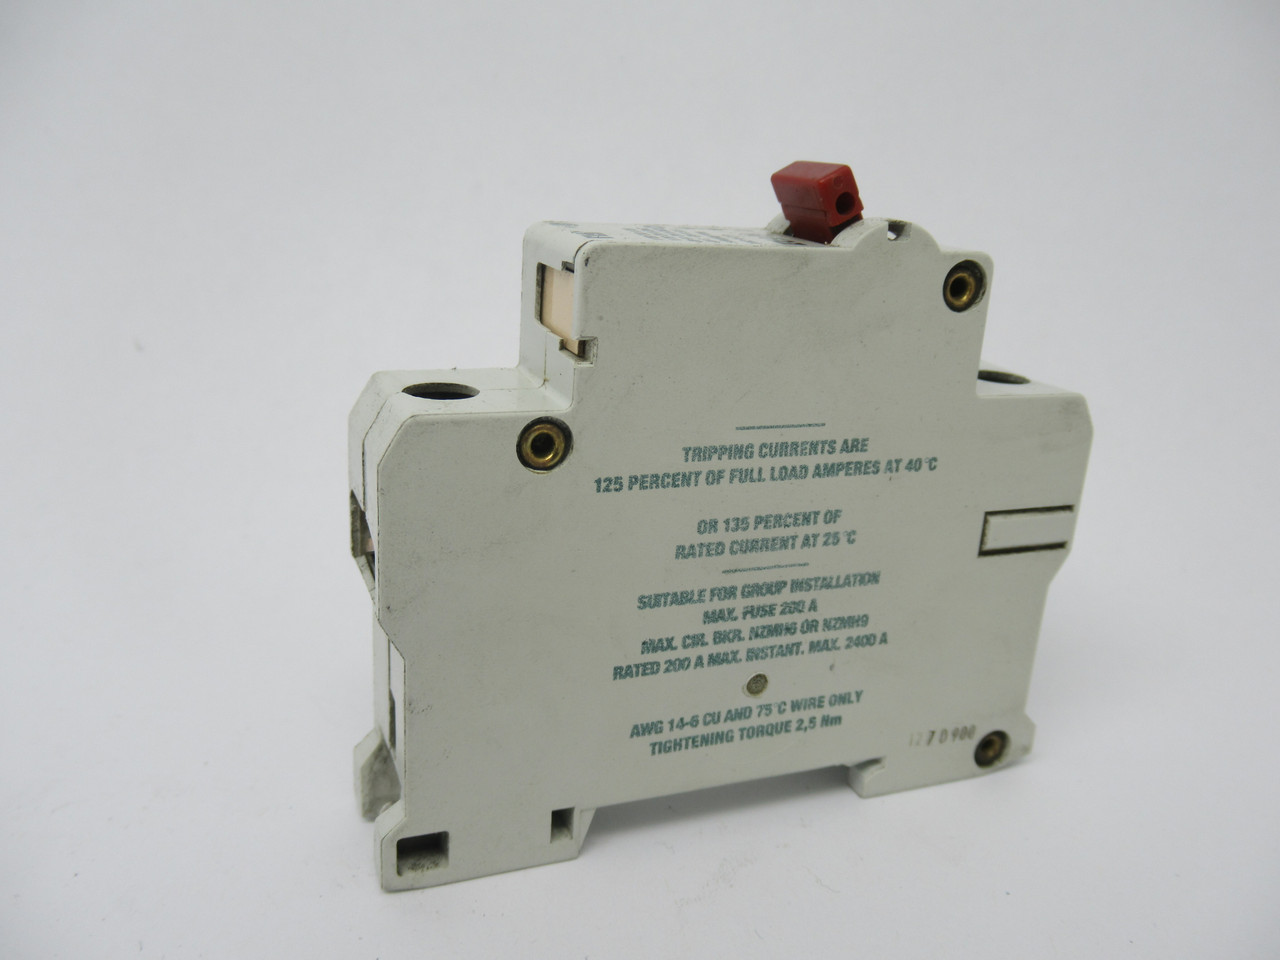 Moeller FAZ-G2A-CNA Circuit Breaker 240VAC-50A 60VDC-50A USED